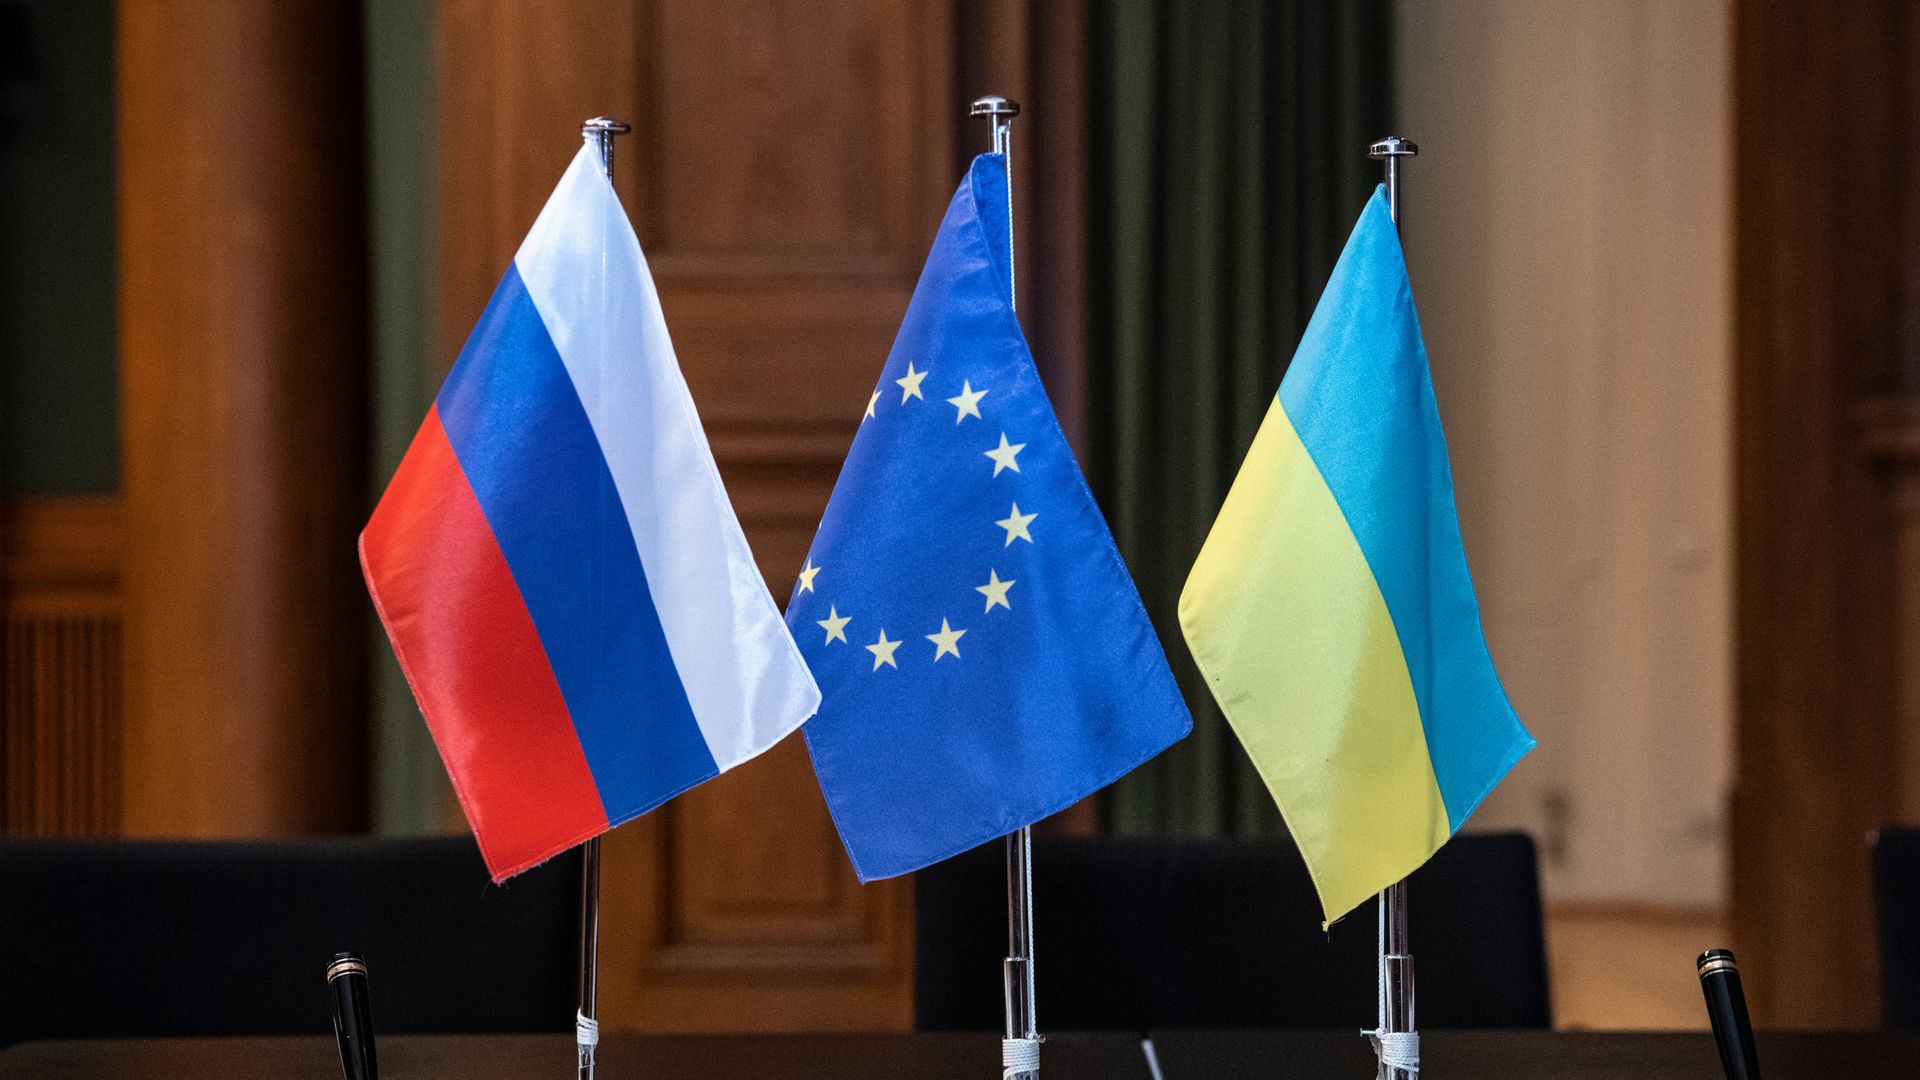 Flags of Russia, European Union and Crimea